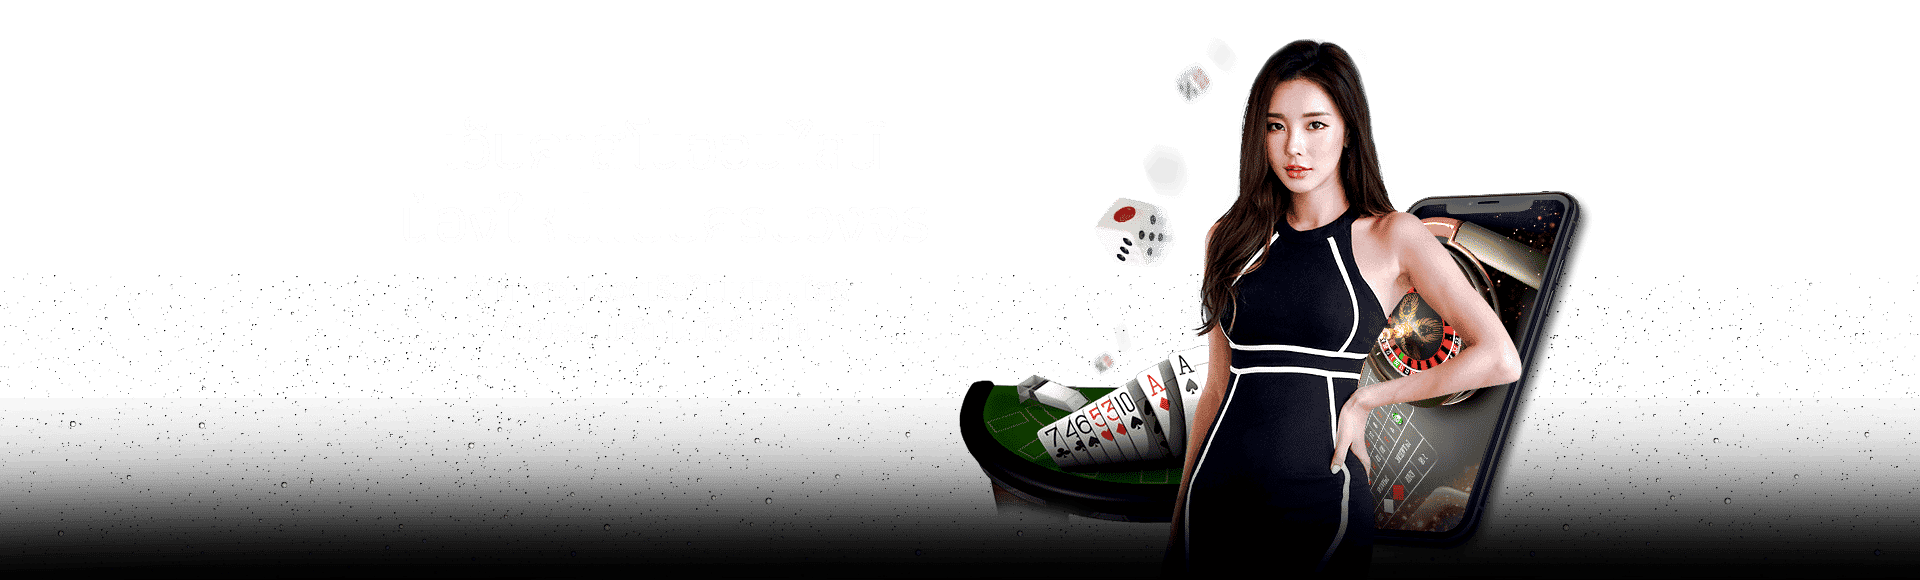 Casino girl